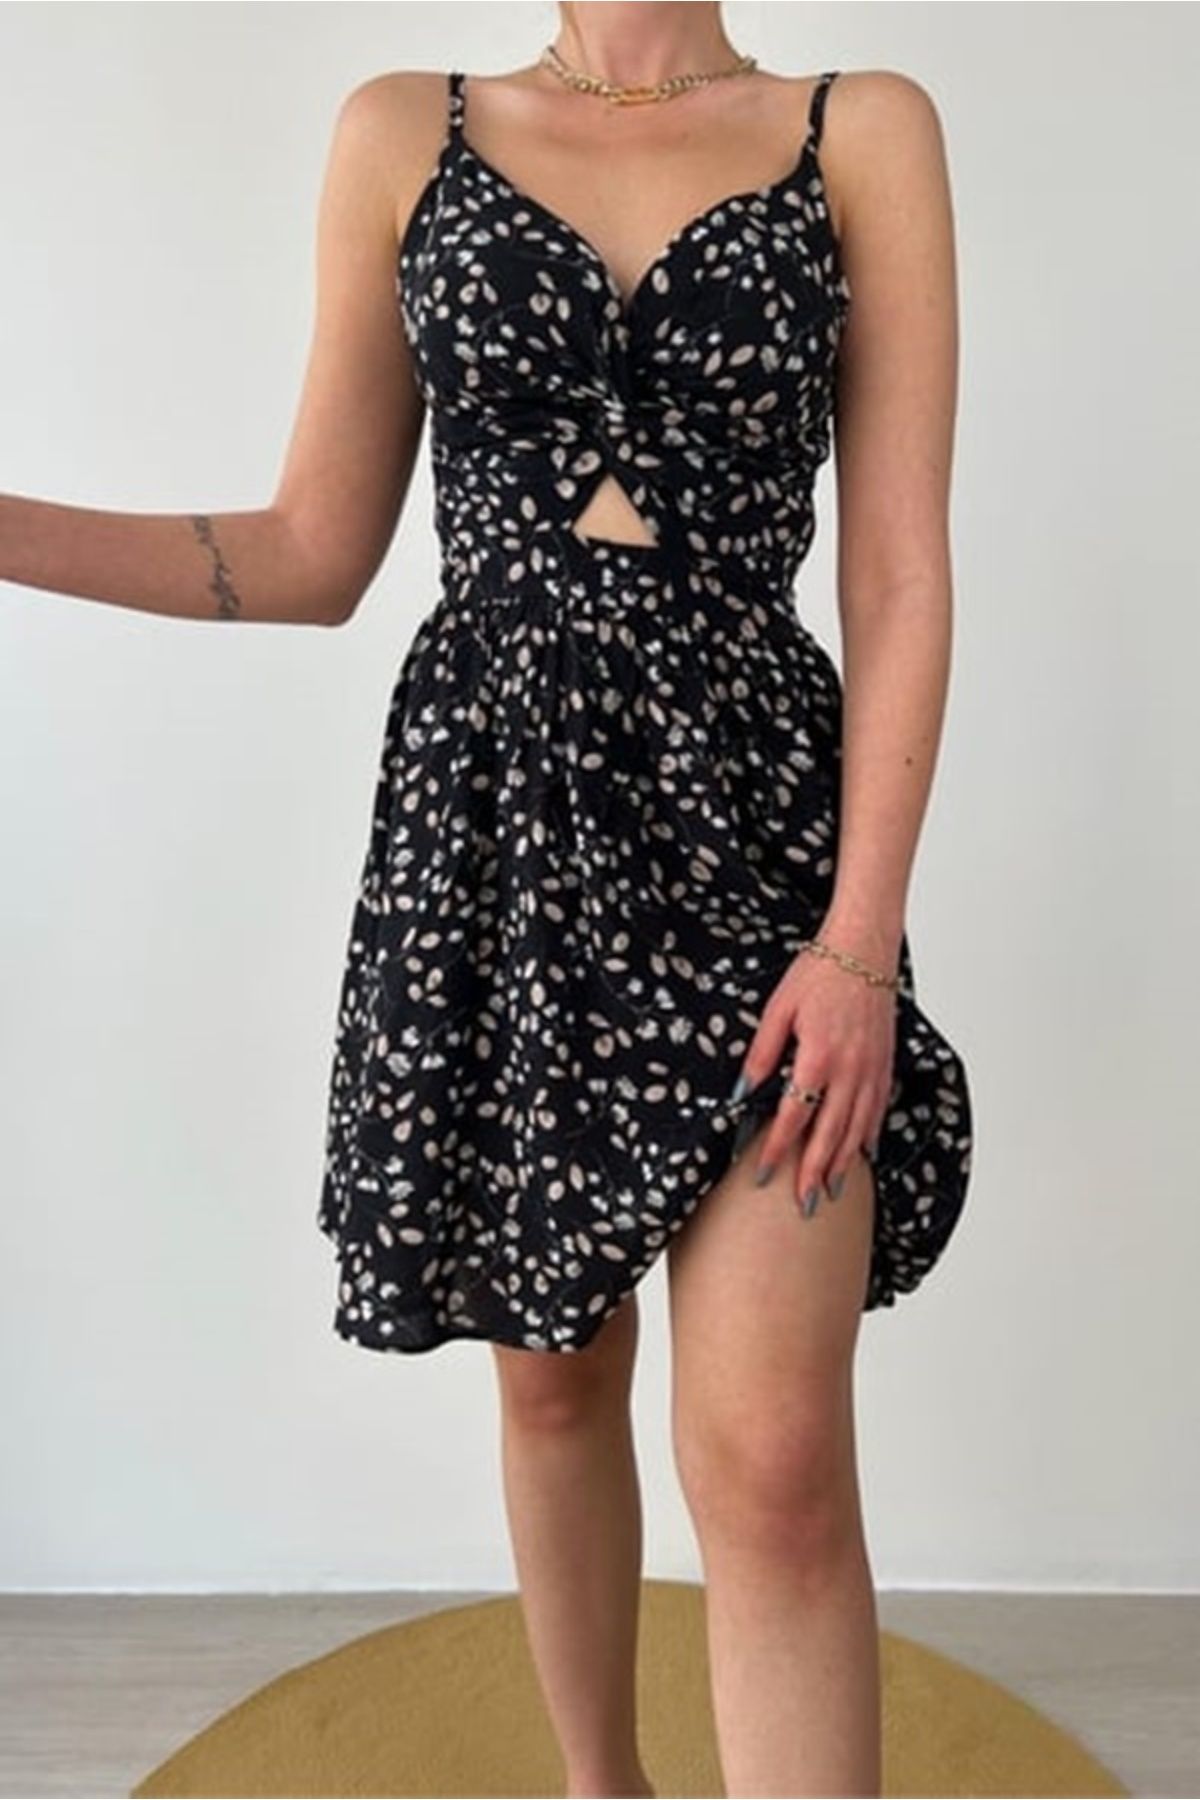 Mossta İp Askılı Kruvaze Yaka Desenli Düğümlü Fashion Elbise